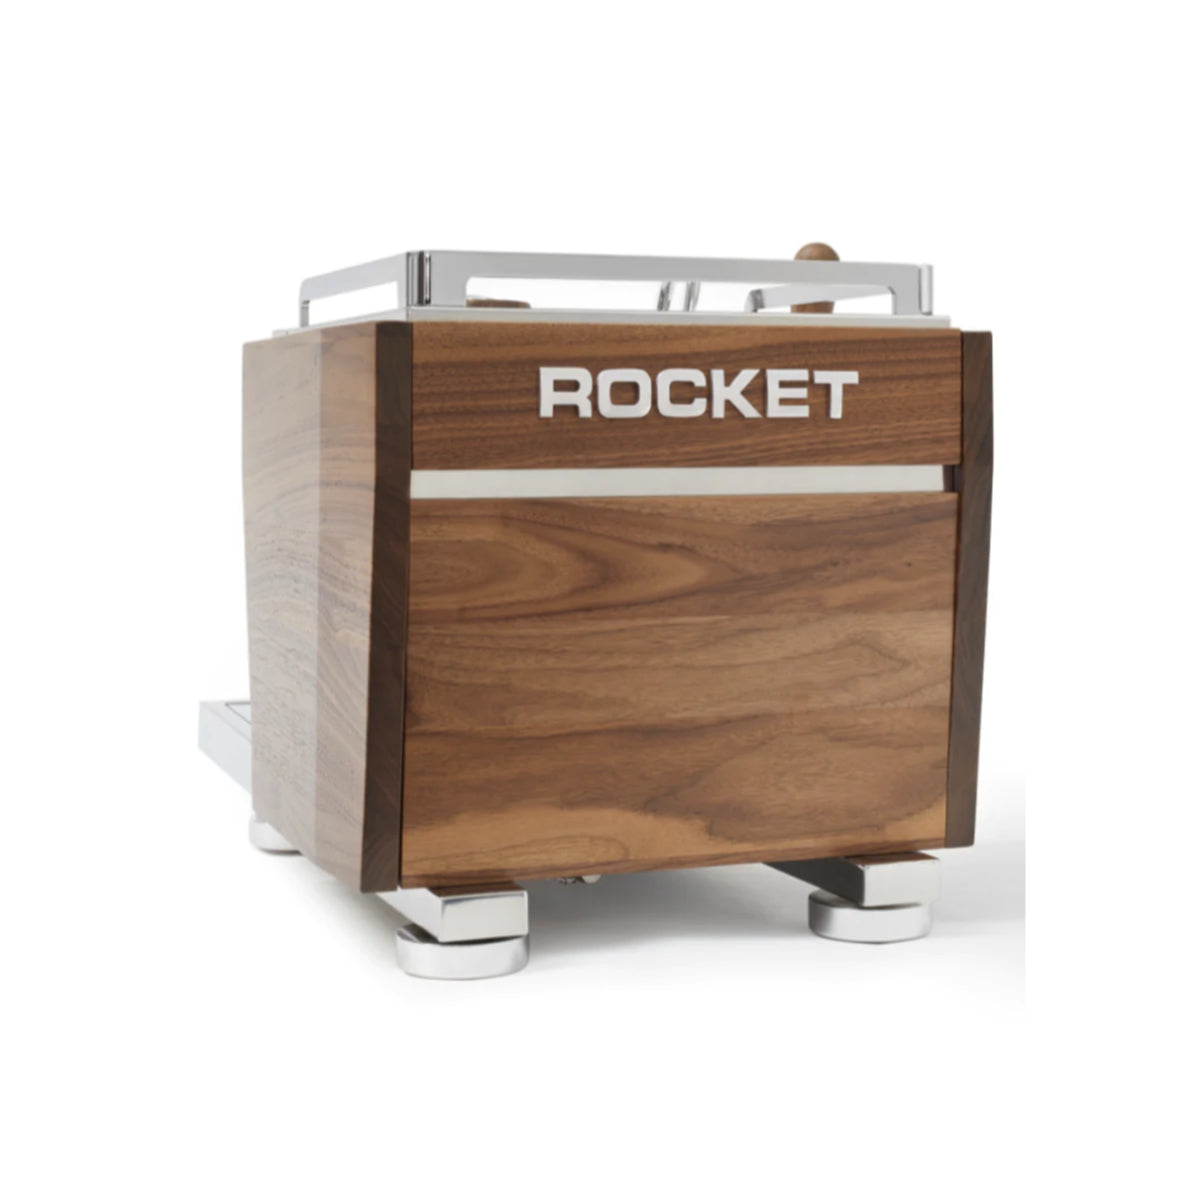 Rocket R Nine One Espresso Machine (Walnut)